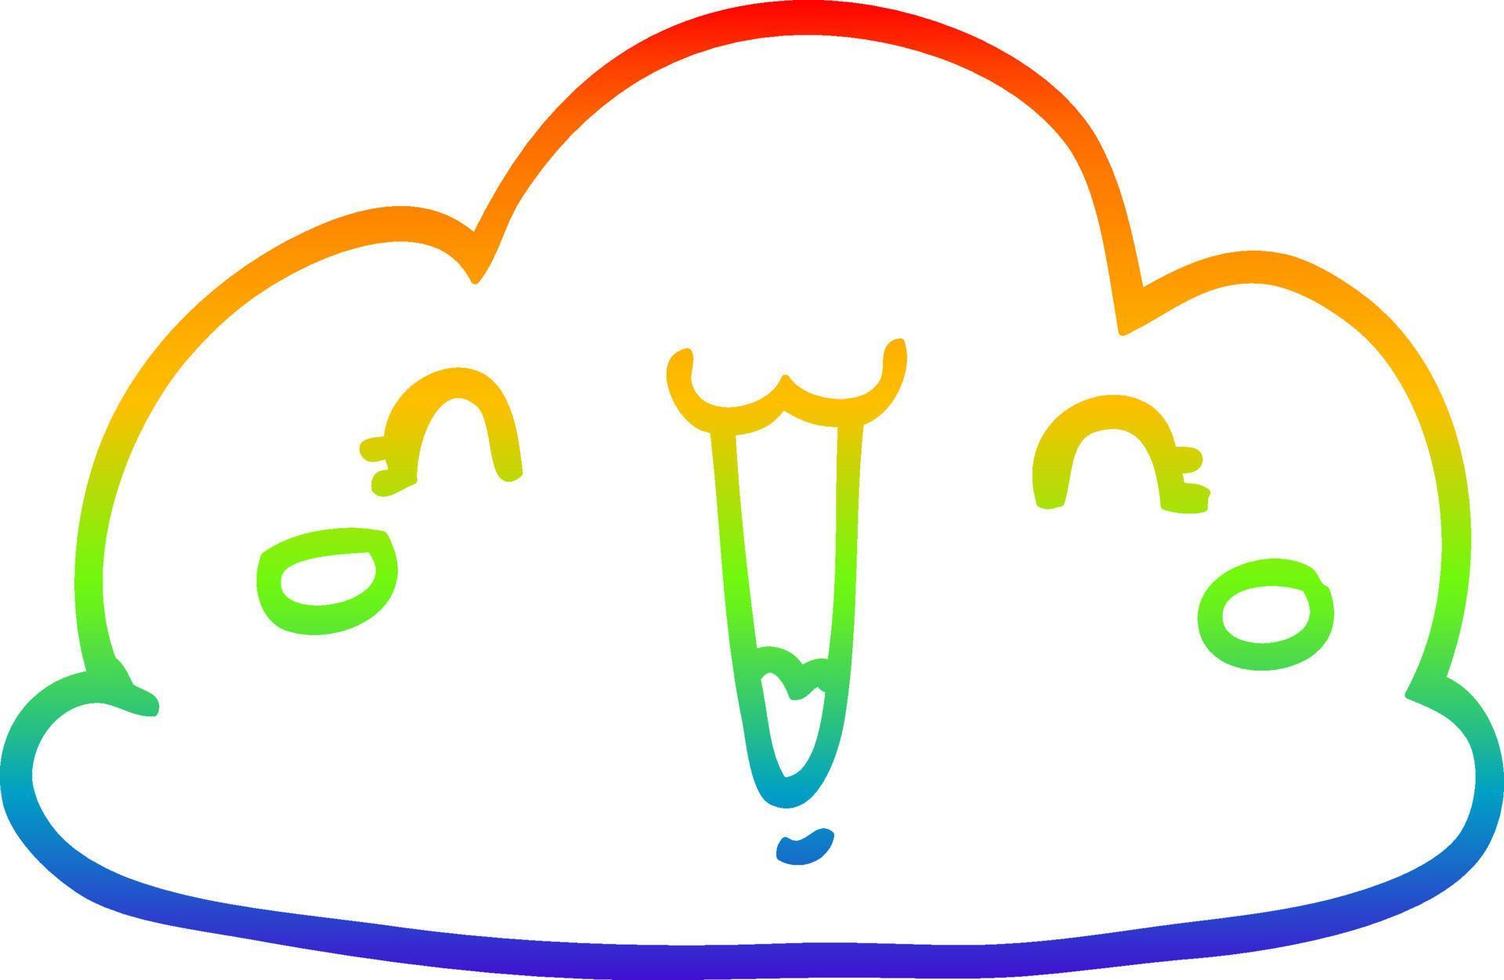 linha de gradiente de arco-íris desenhando nuvem de desenho bonito vetor